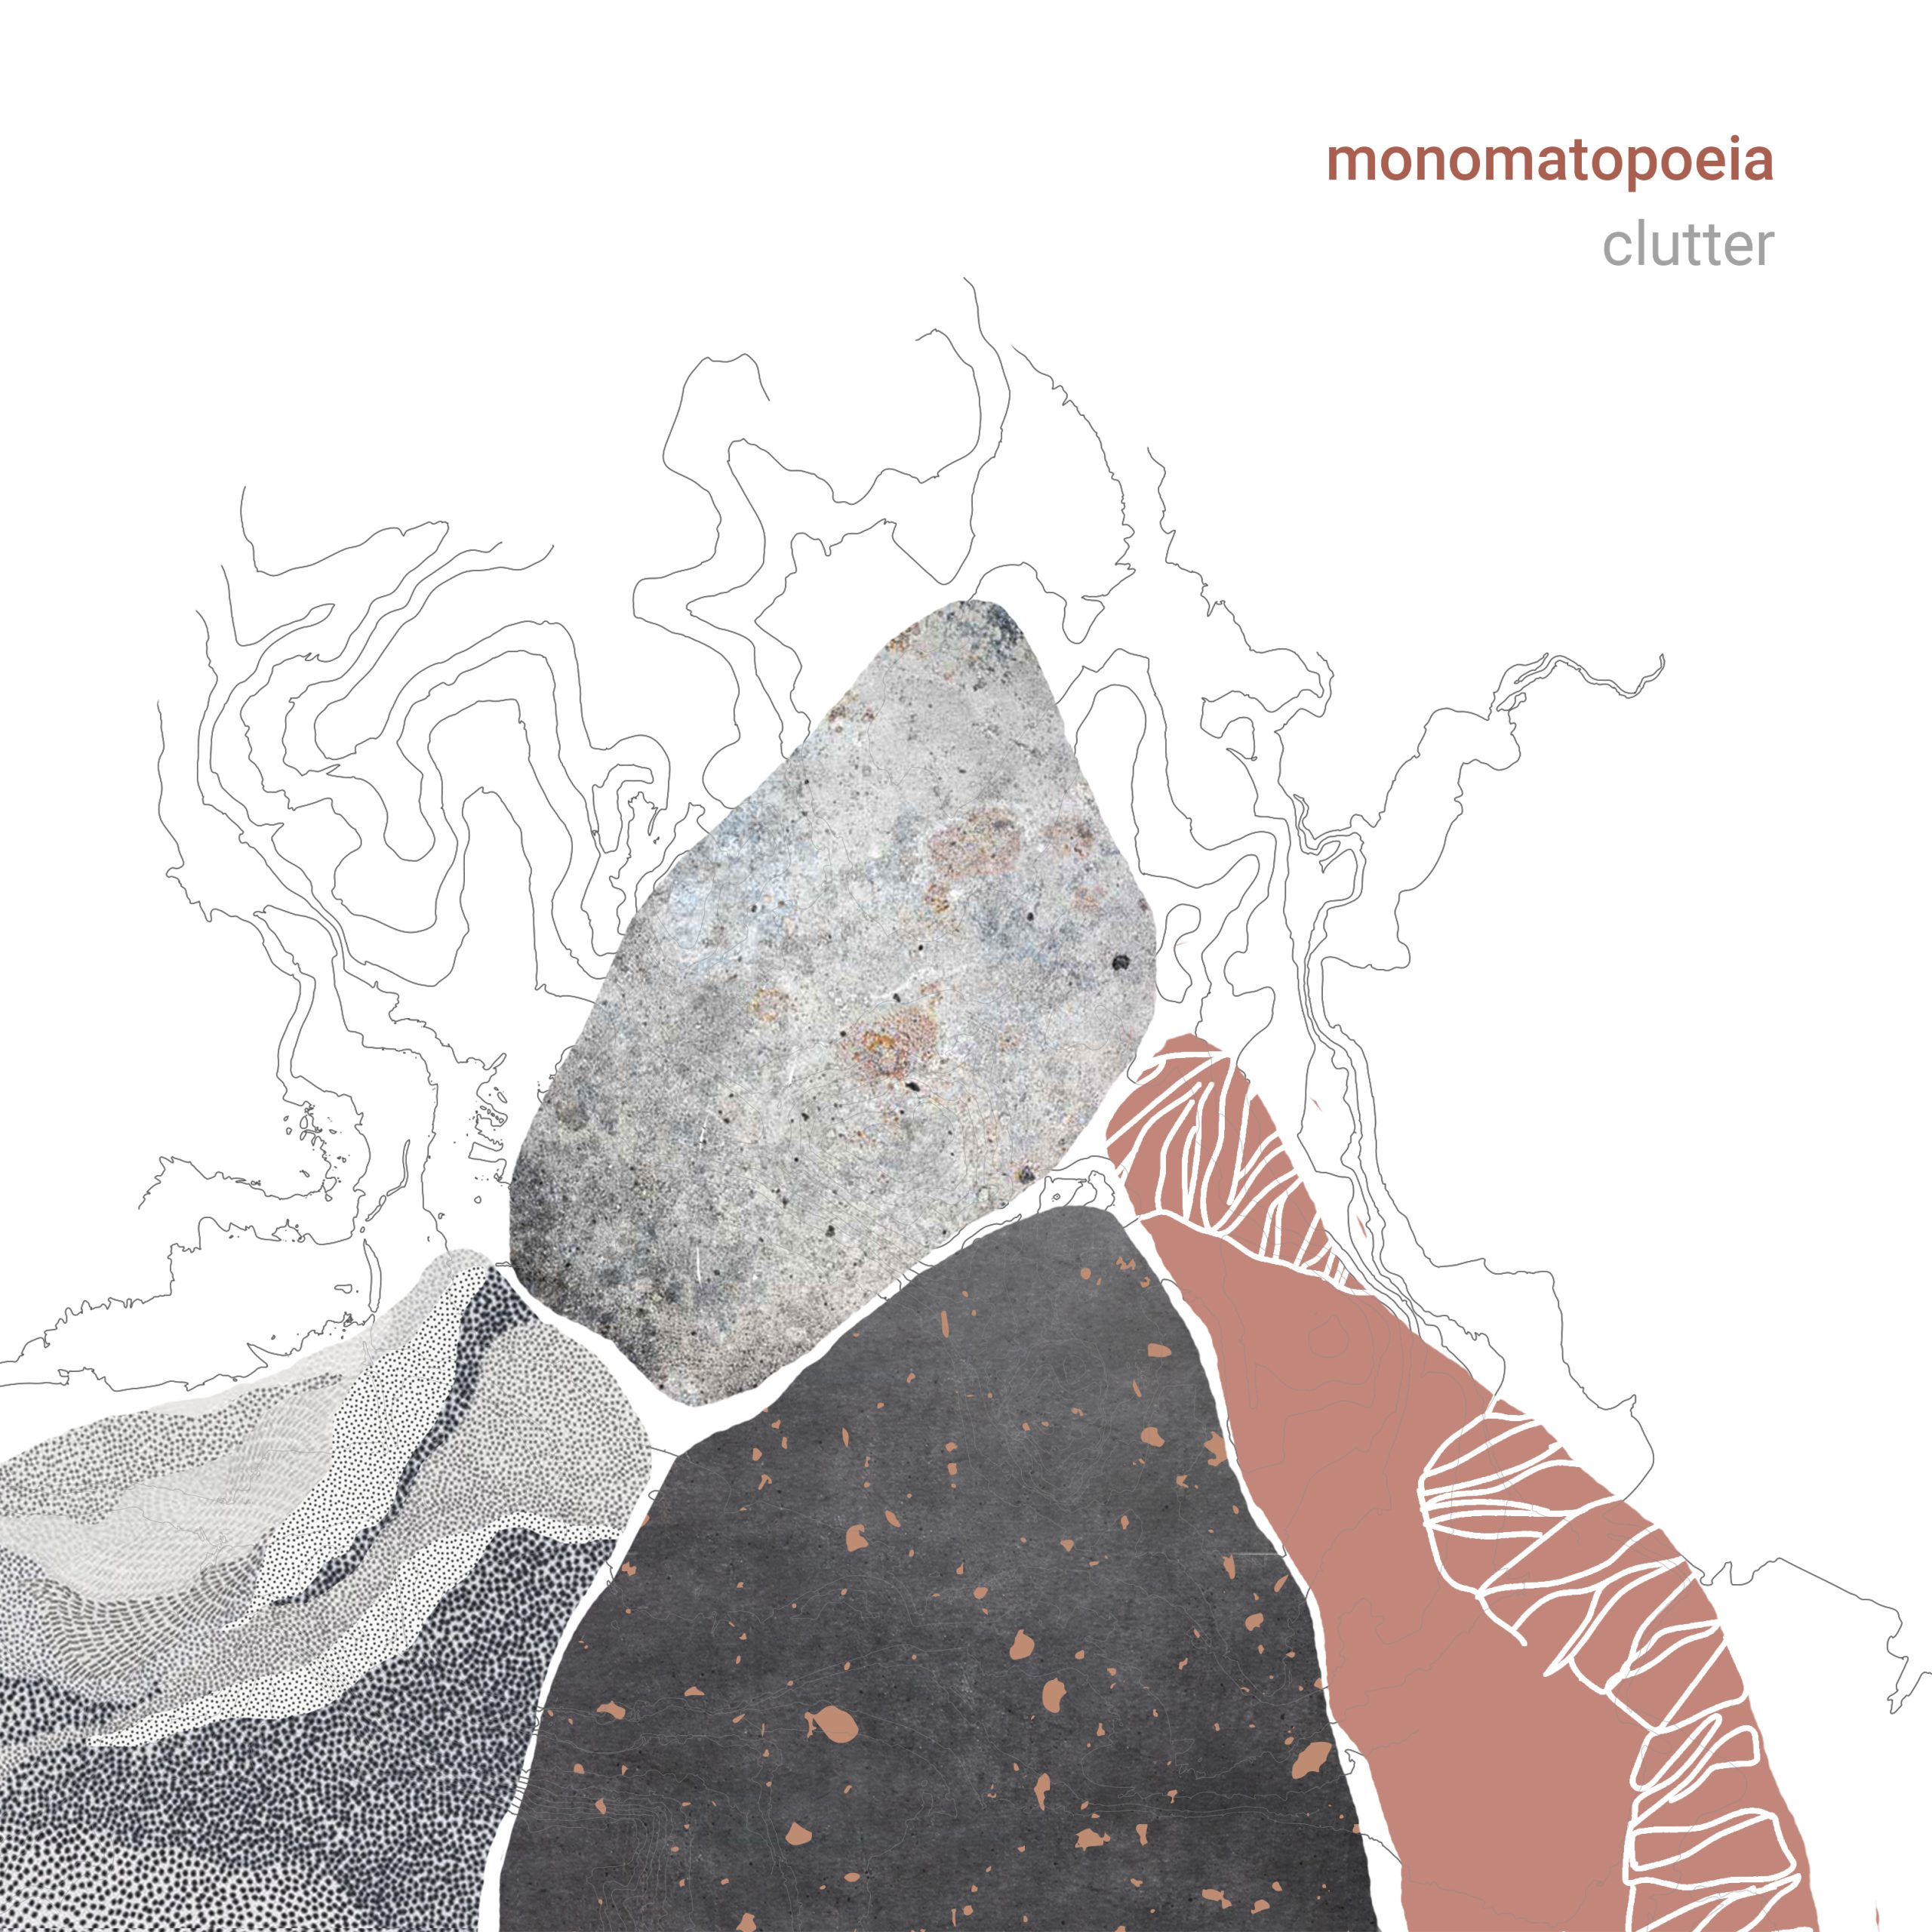 Monomatopoeia: Clutter